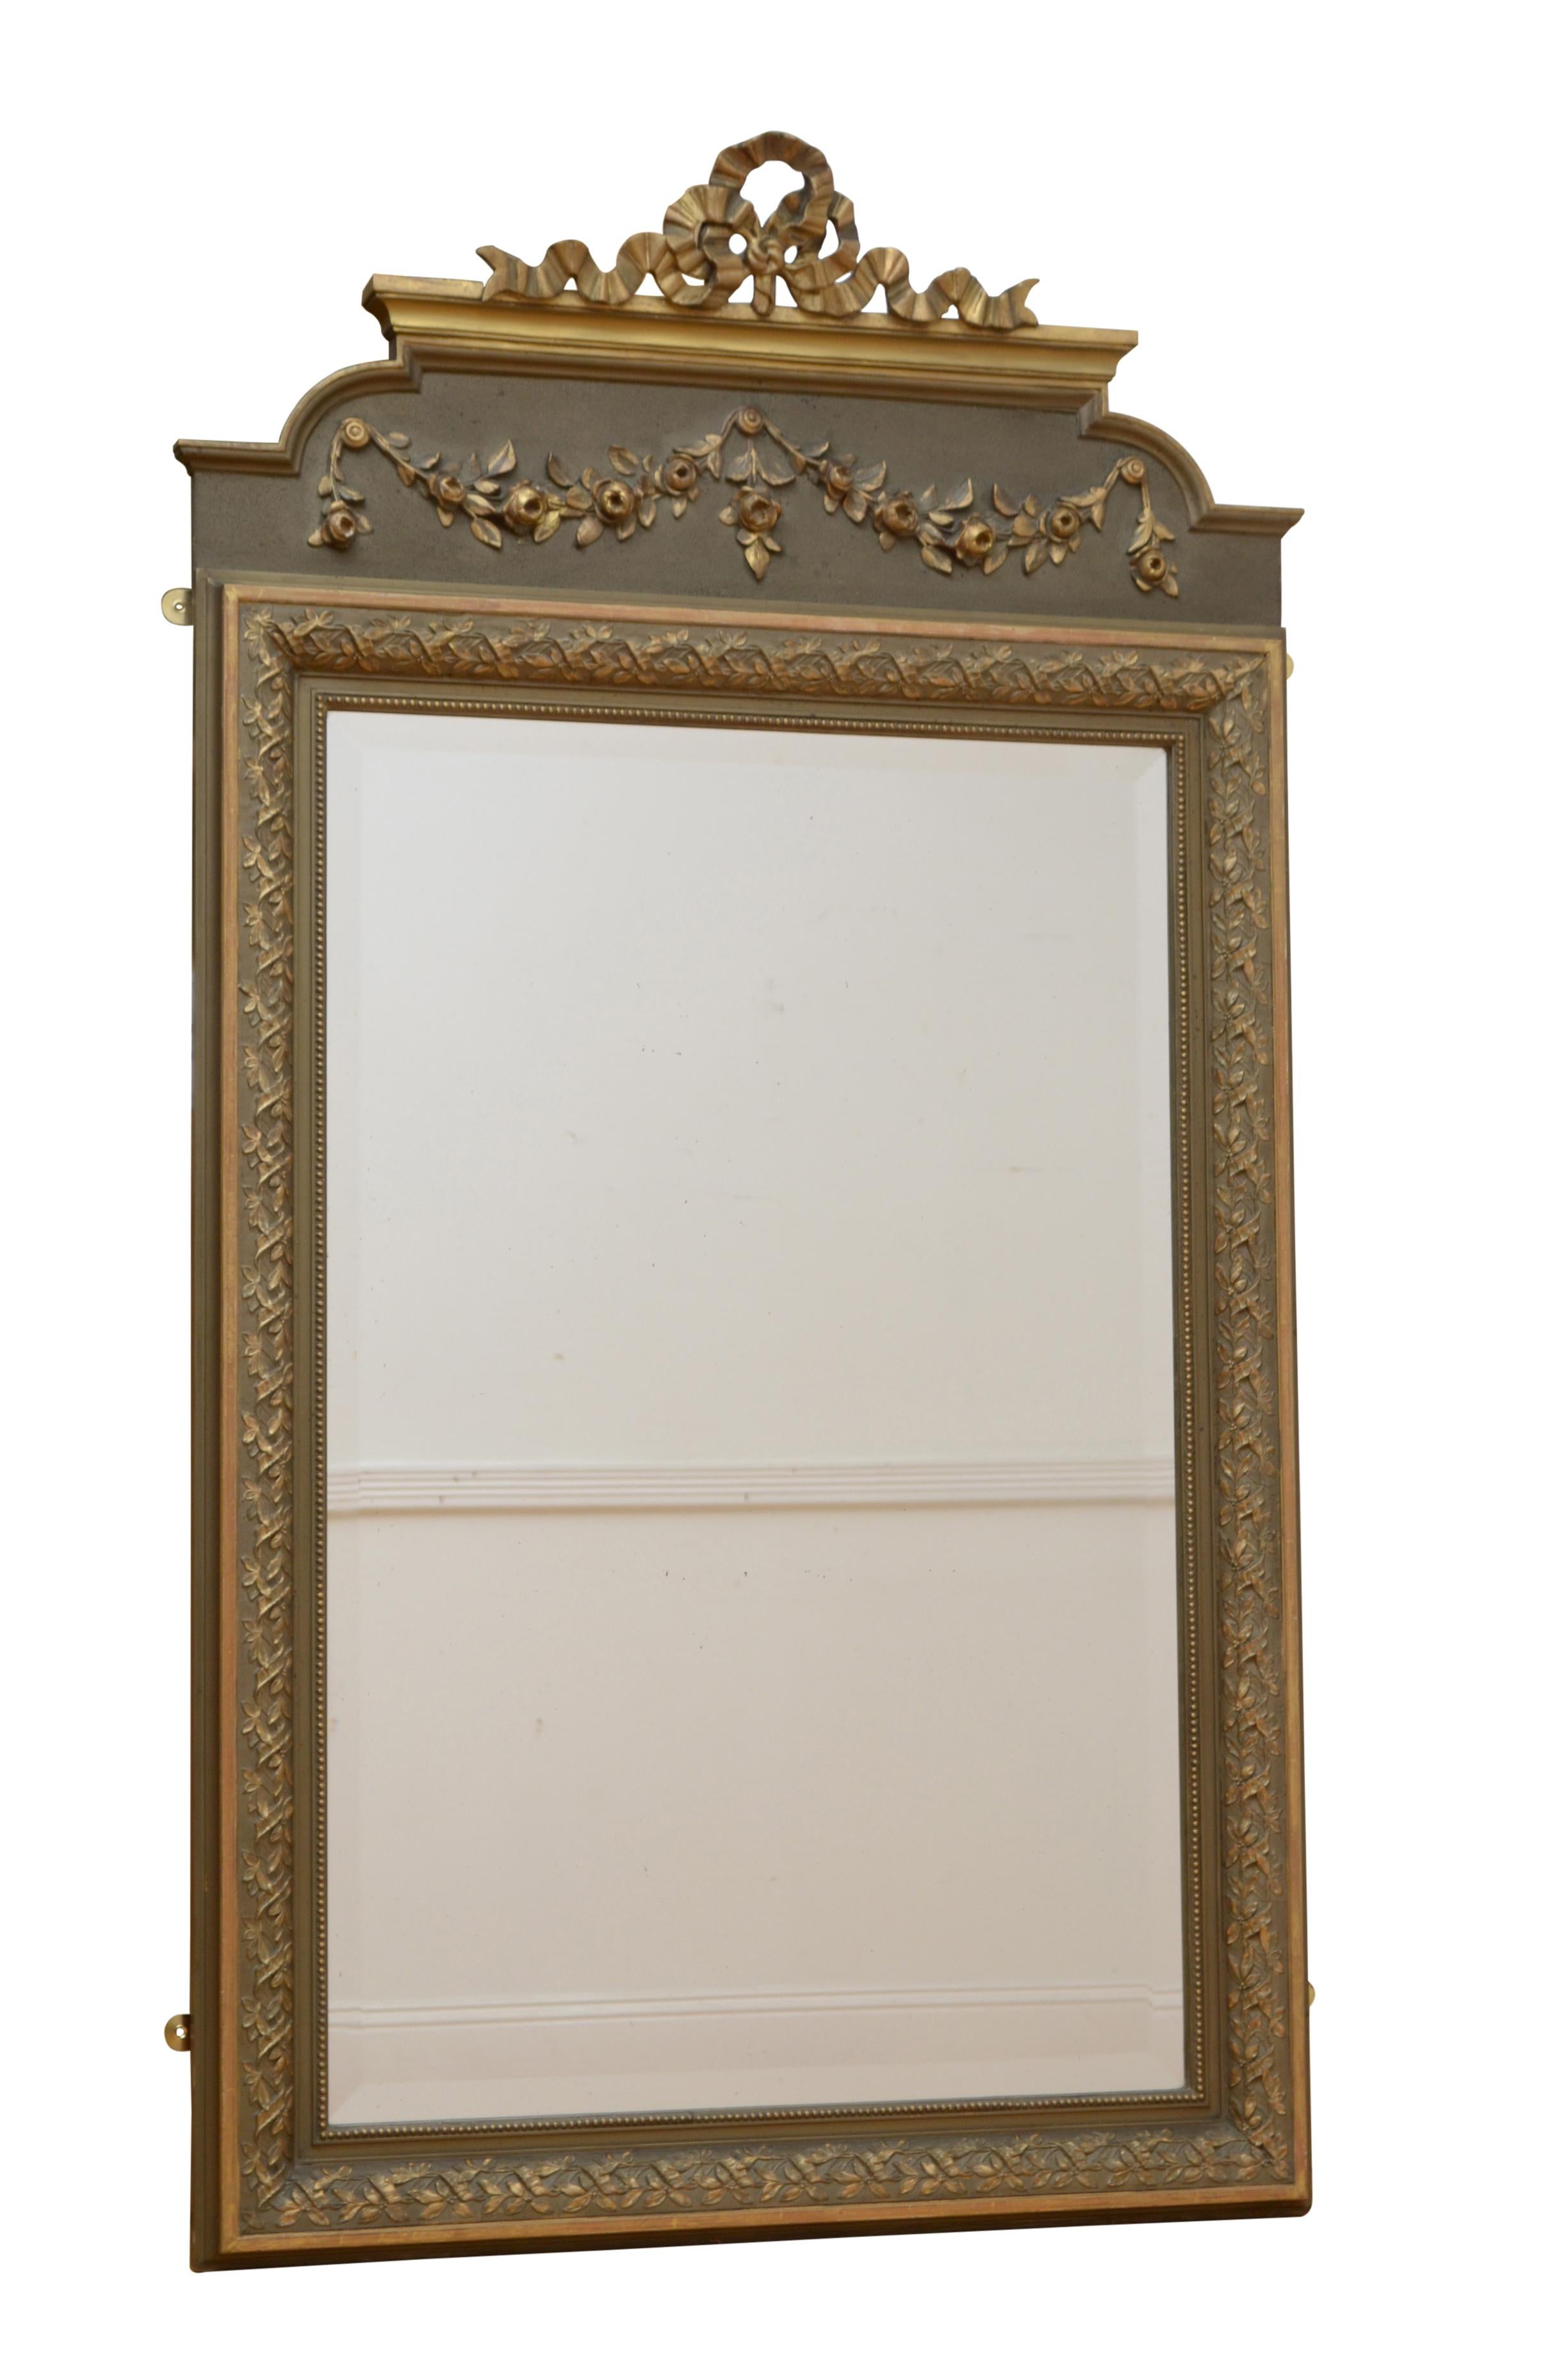 0234 Attraktiver französischer Wandspiegel mit originalem, abgeschrägtem Glas in einem vergoldeten Rahmen mit Blumenschnitzereien und Blumenranken auf einem olivgrünen Brett und einer vergoldeten Schleife an der Oberseite. Dieser antike Spiegel